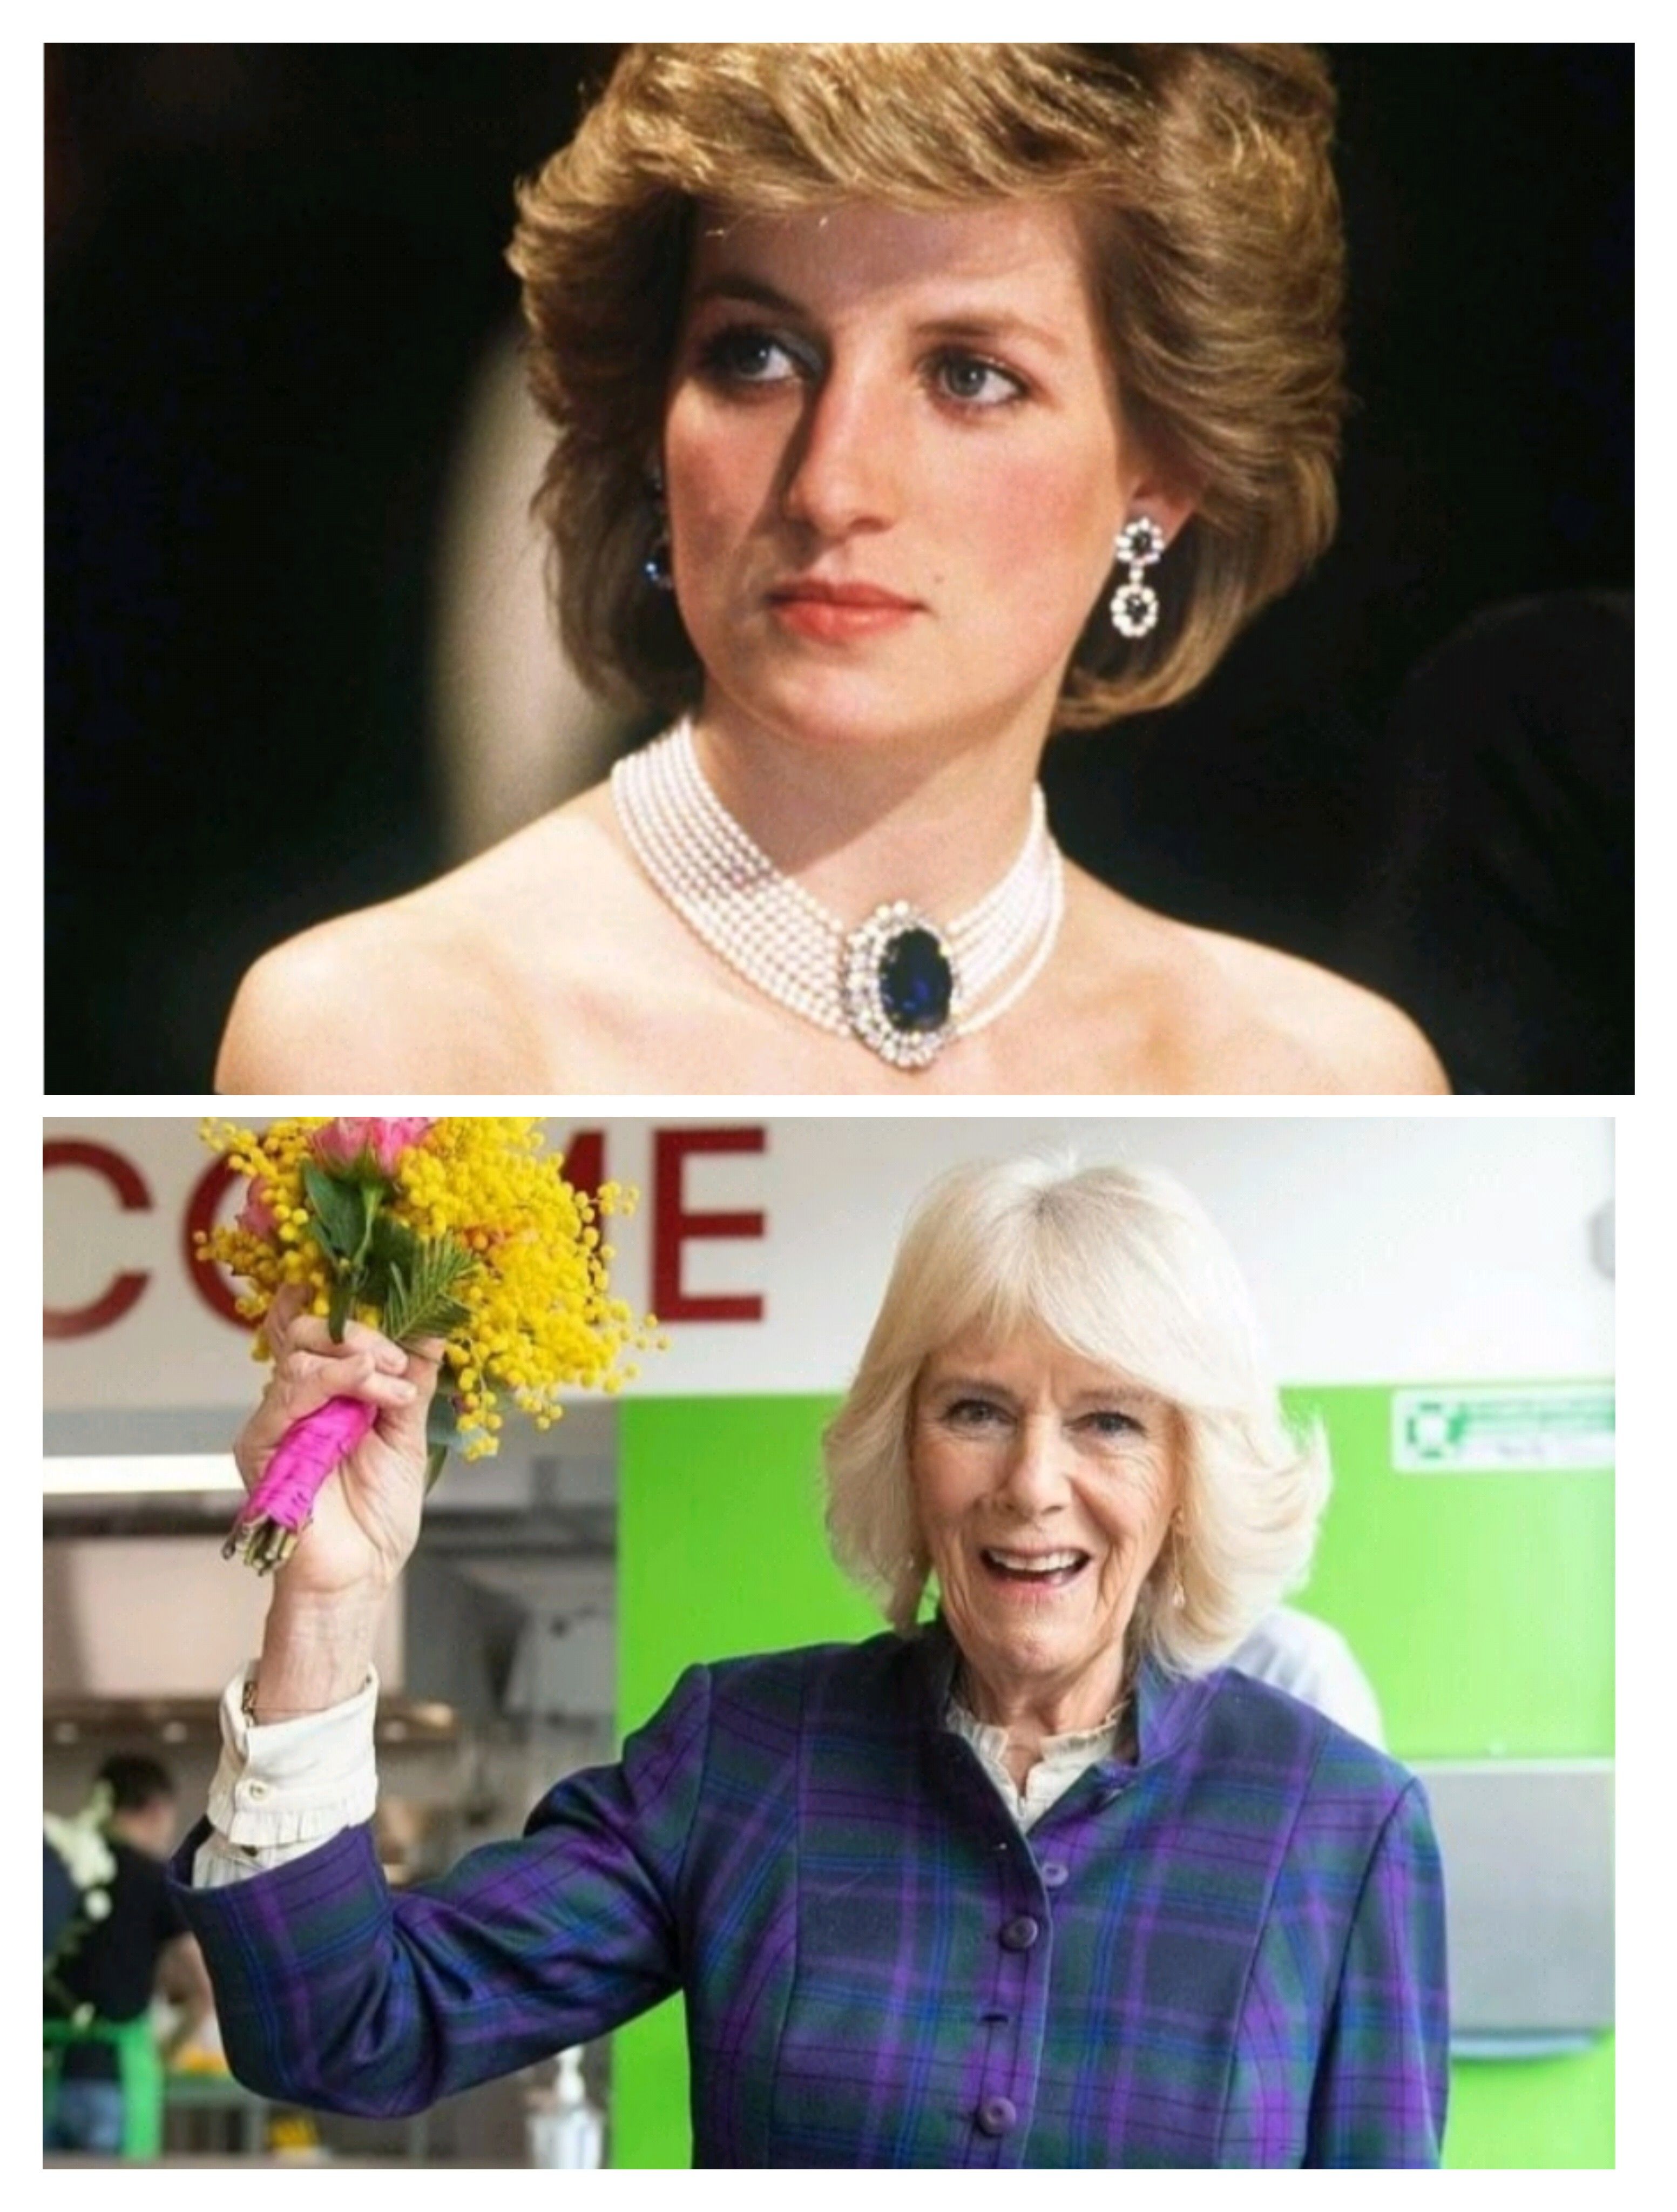 Perbandingan Lady Diana dan Camilla Bowles yang kurang mendapat simpati publik